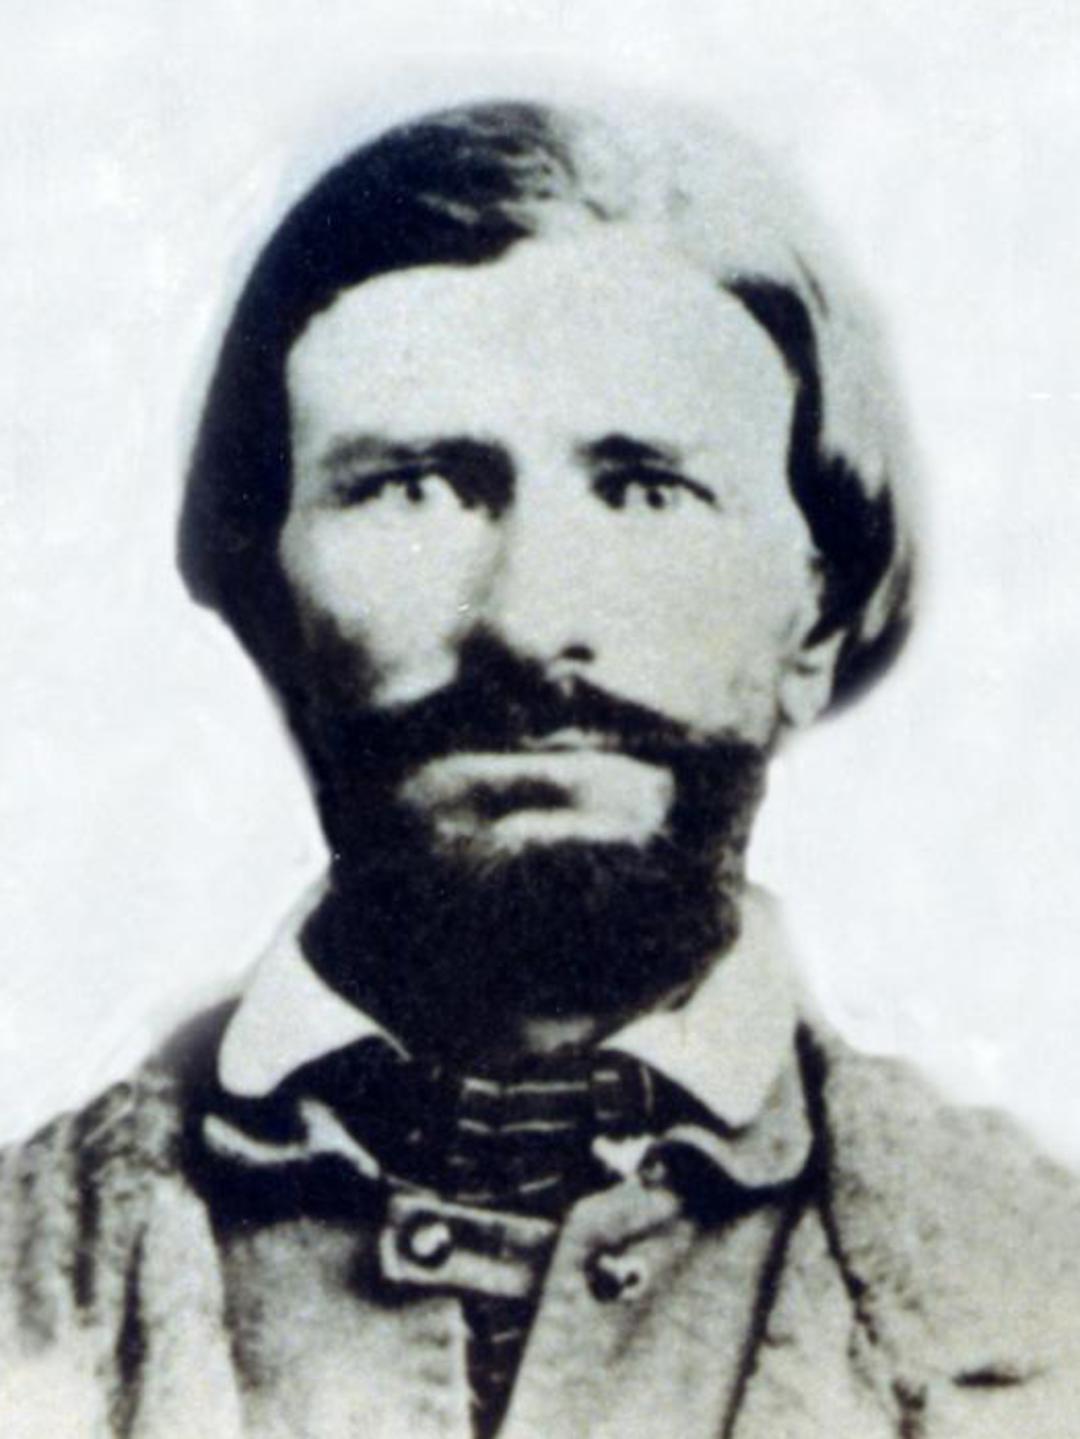 Luke William Gallup (1822 - 1891) Profile